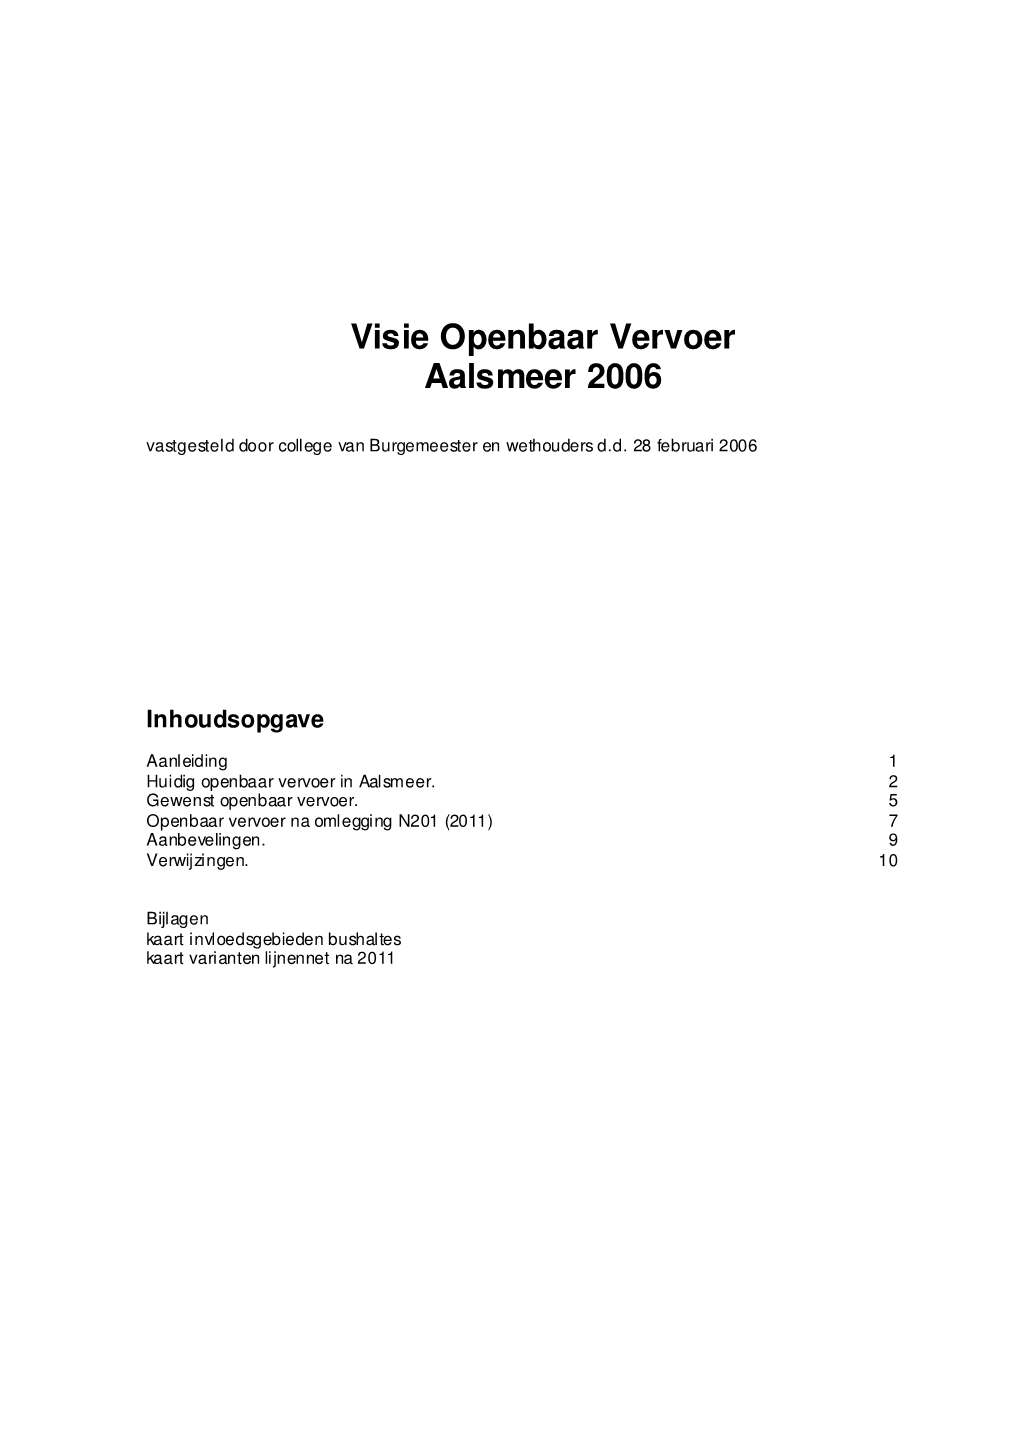 Visie Openbaar Vervoer Aalsmeer 2006 Vastgesteld Door College Van Burgemeester En Wethouders D.D